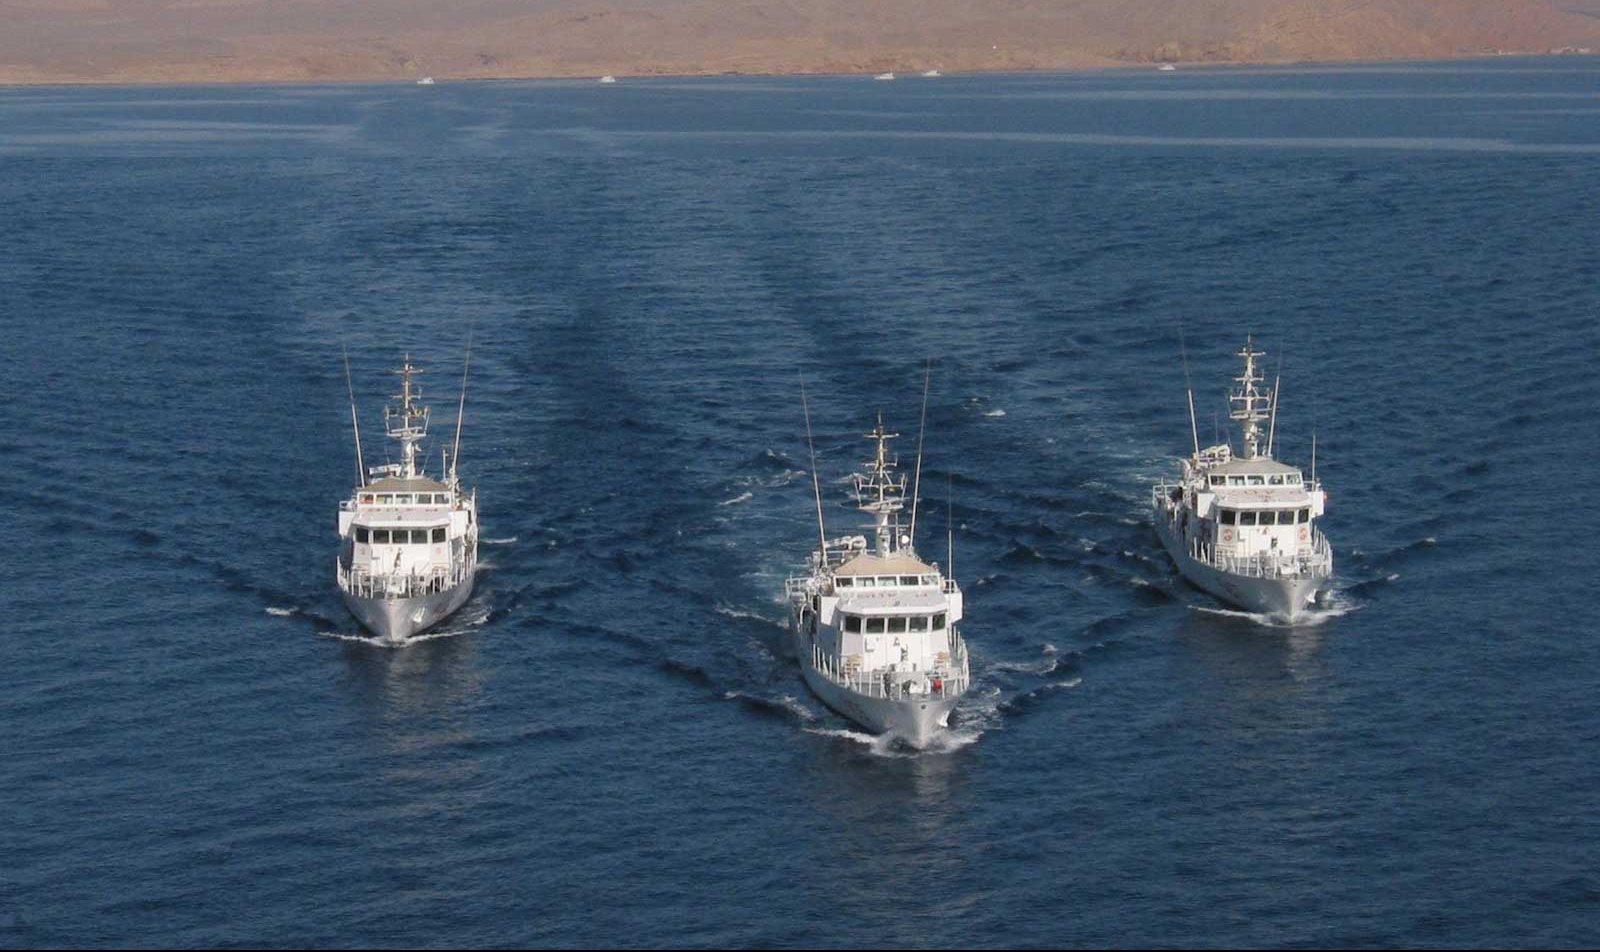 Le tre navi operative nel Golfo di Aqaba per la missione MFO: "Esploratore", "Sentinella" e "Vedetta".